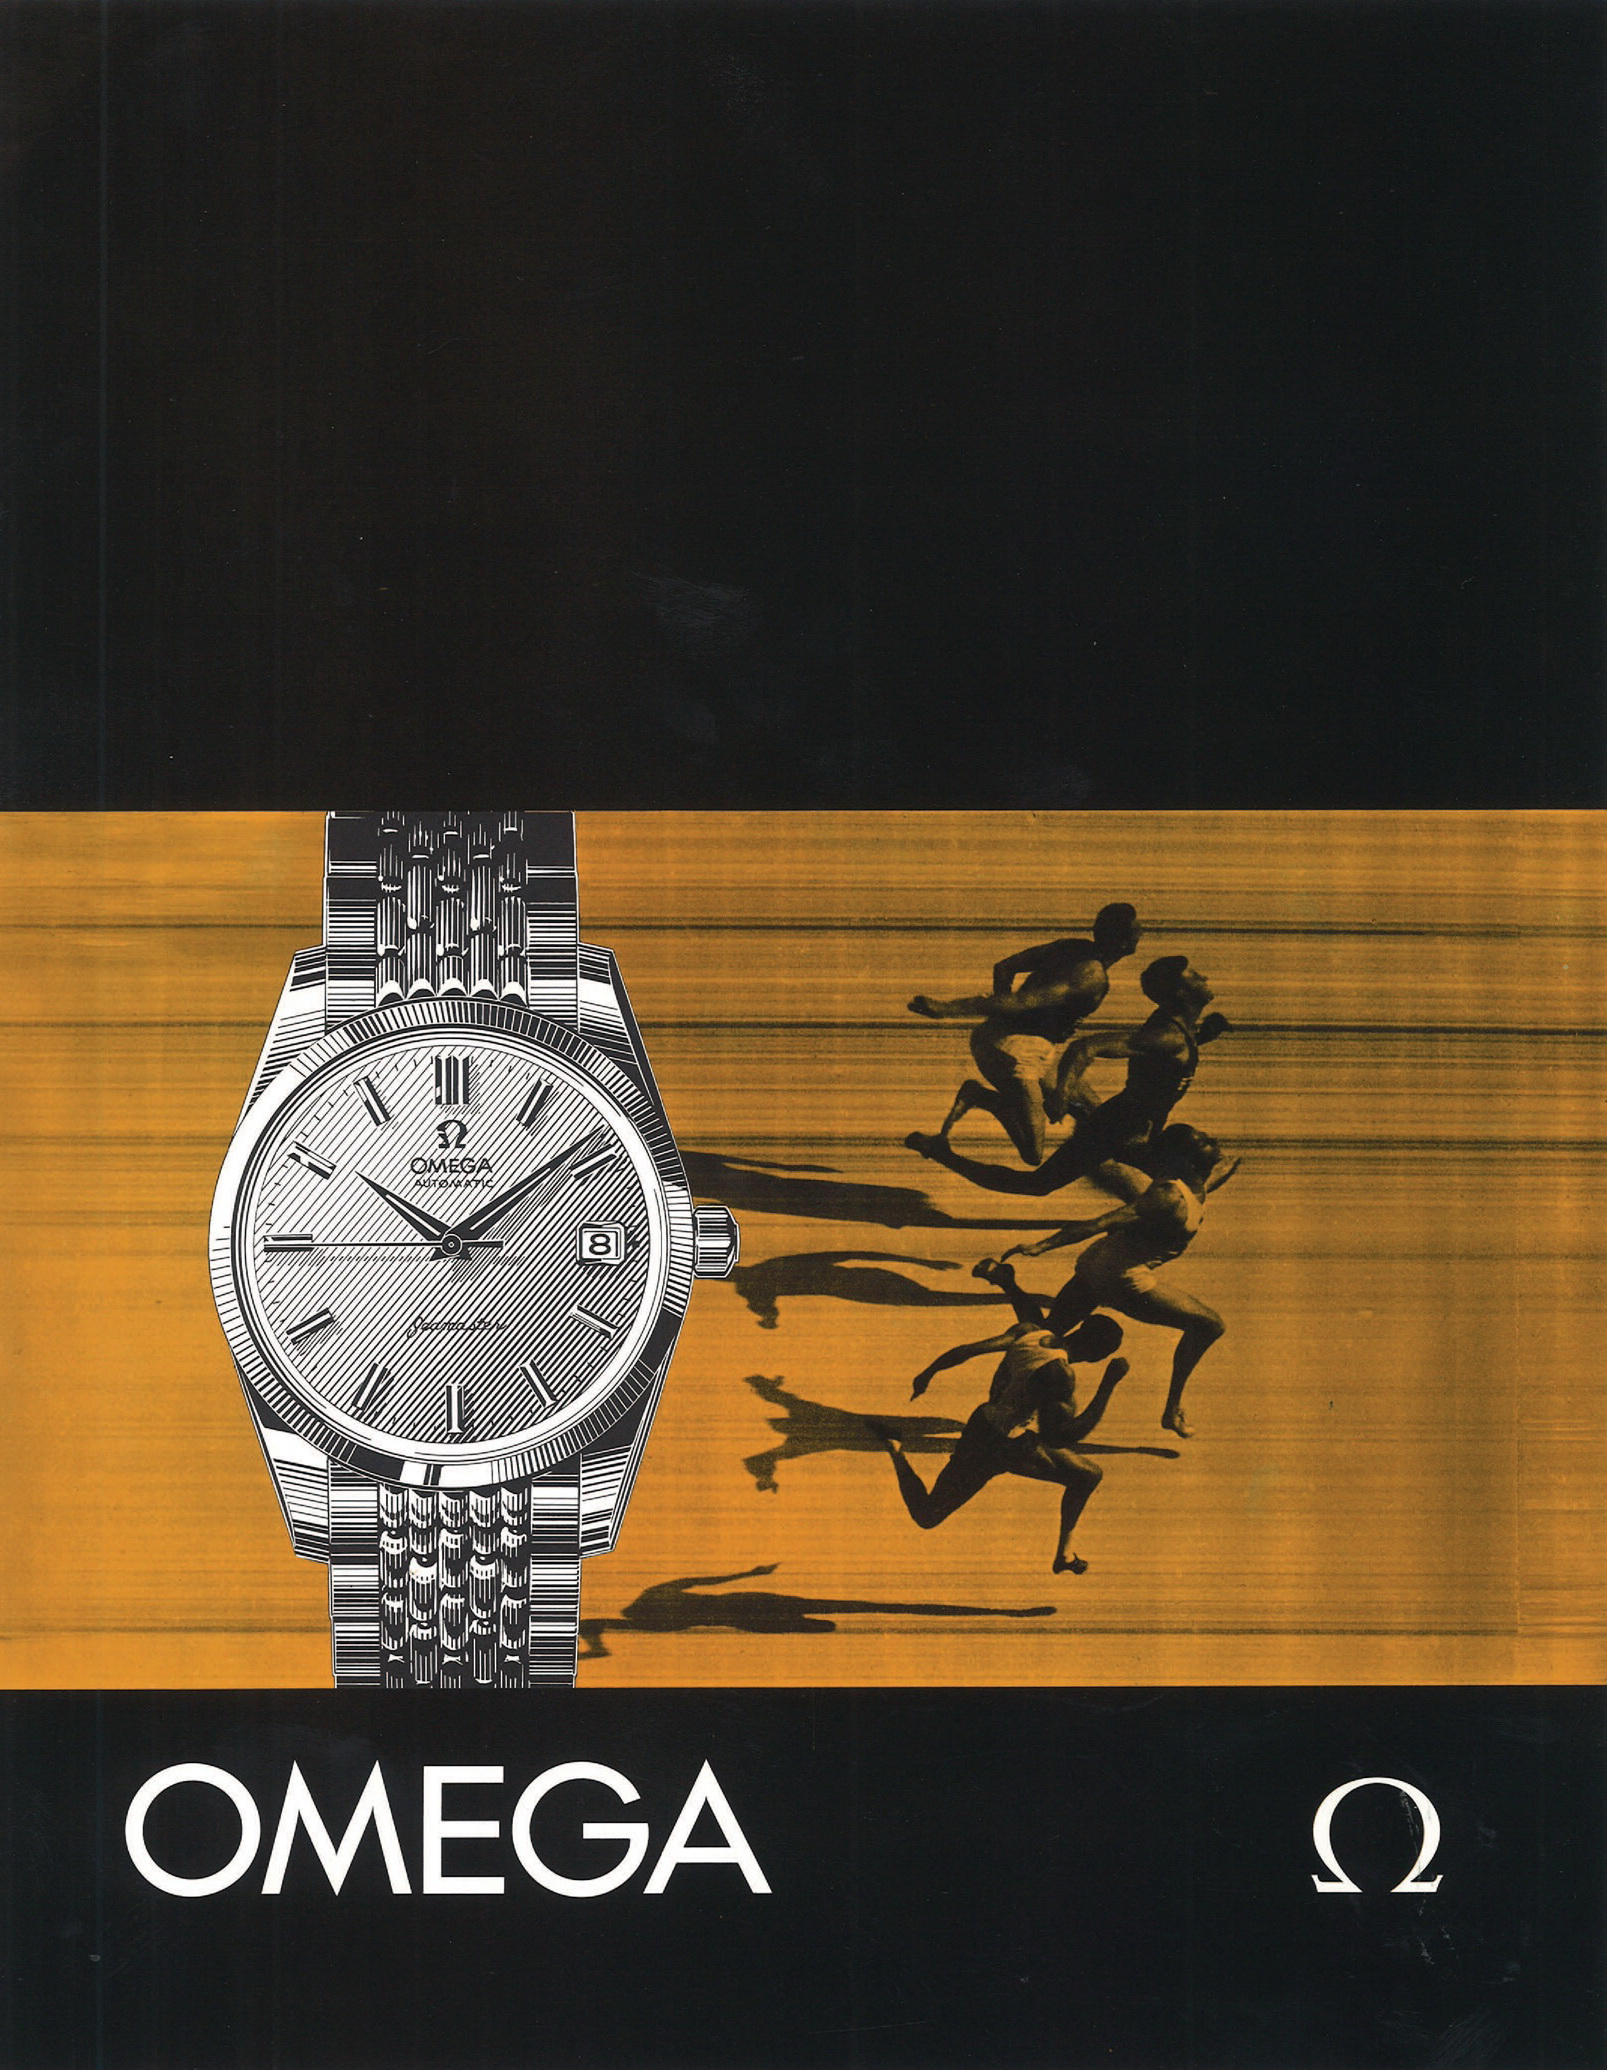 publicité Omega copyright Omega